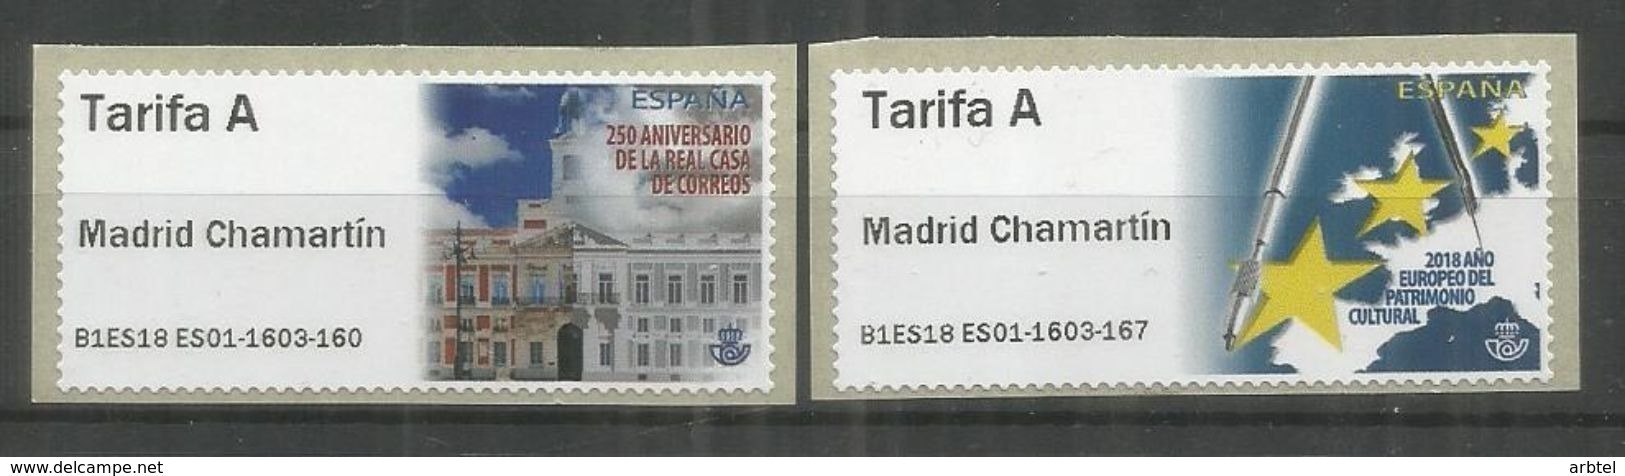 ATM MADRID CHAMARTIN 2018 MODELO CASA CORREOS Y EUROPA TARIFA  A - Nuevos